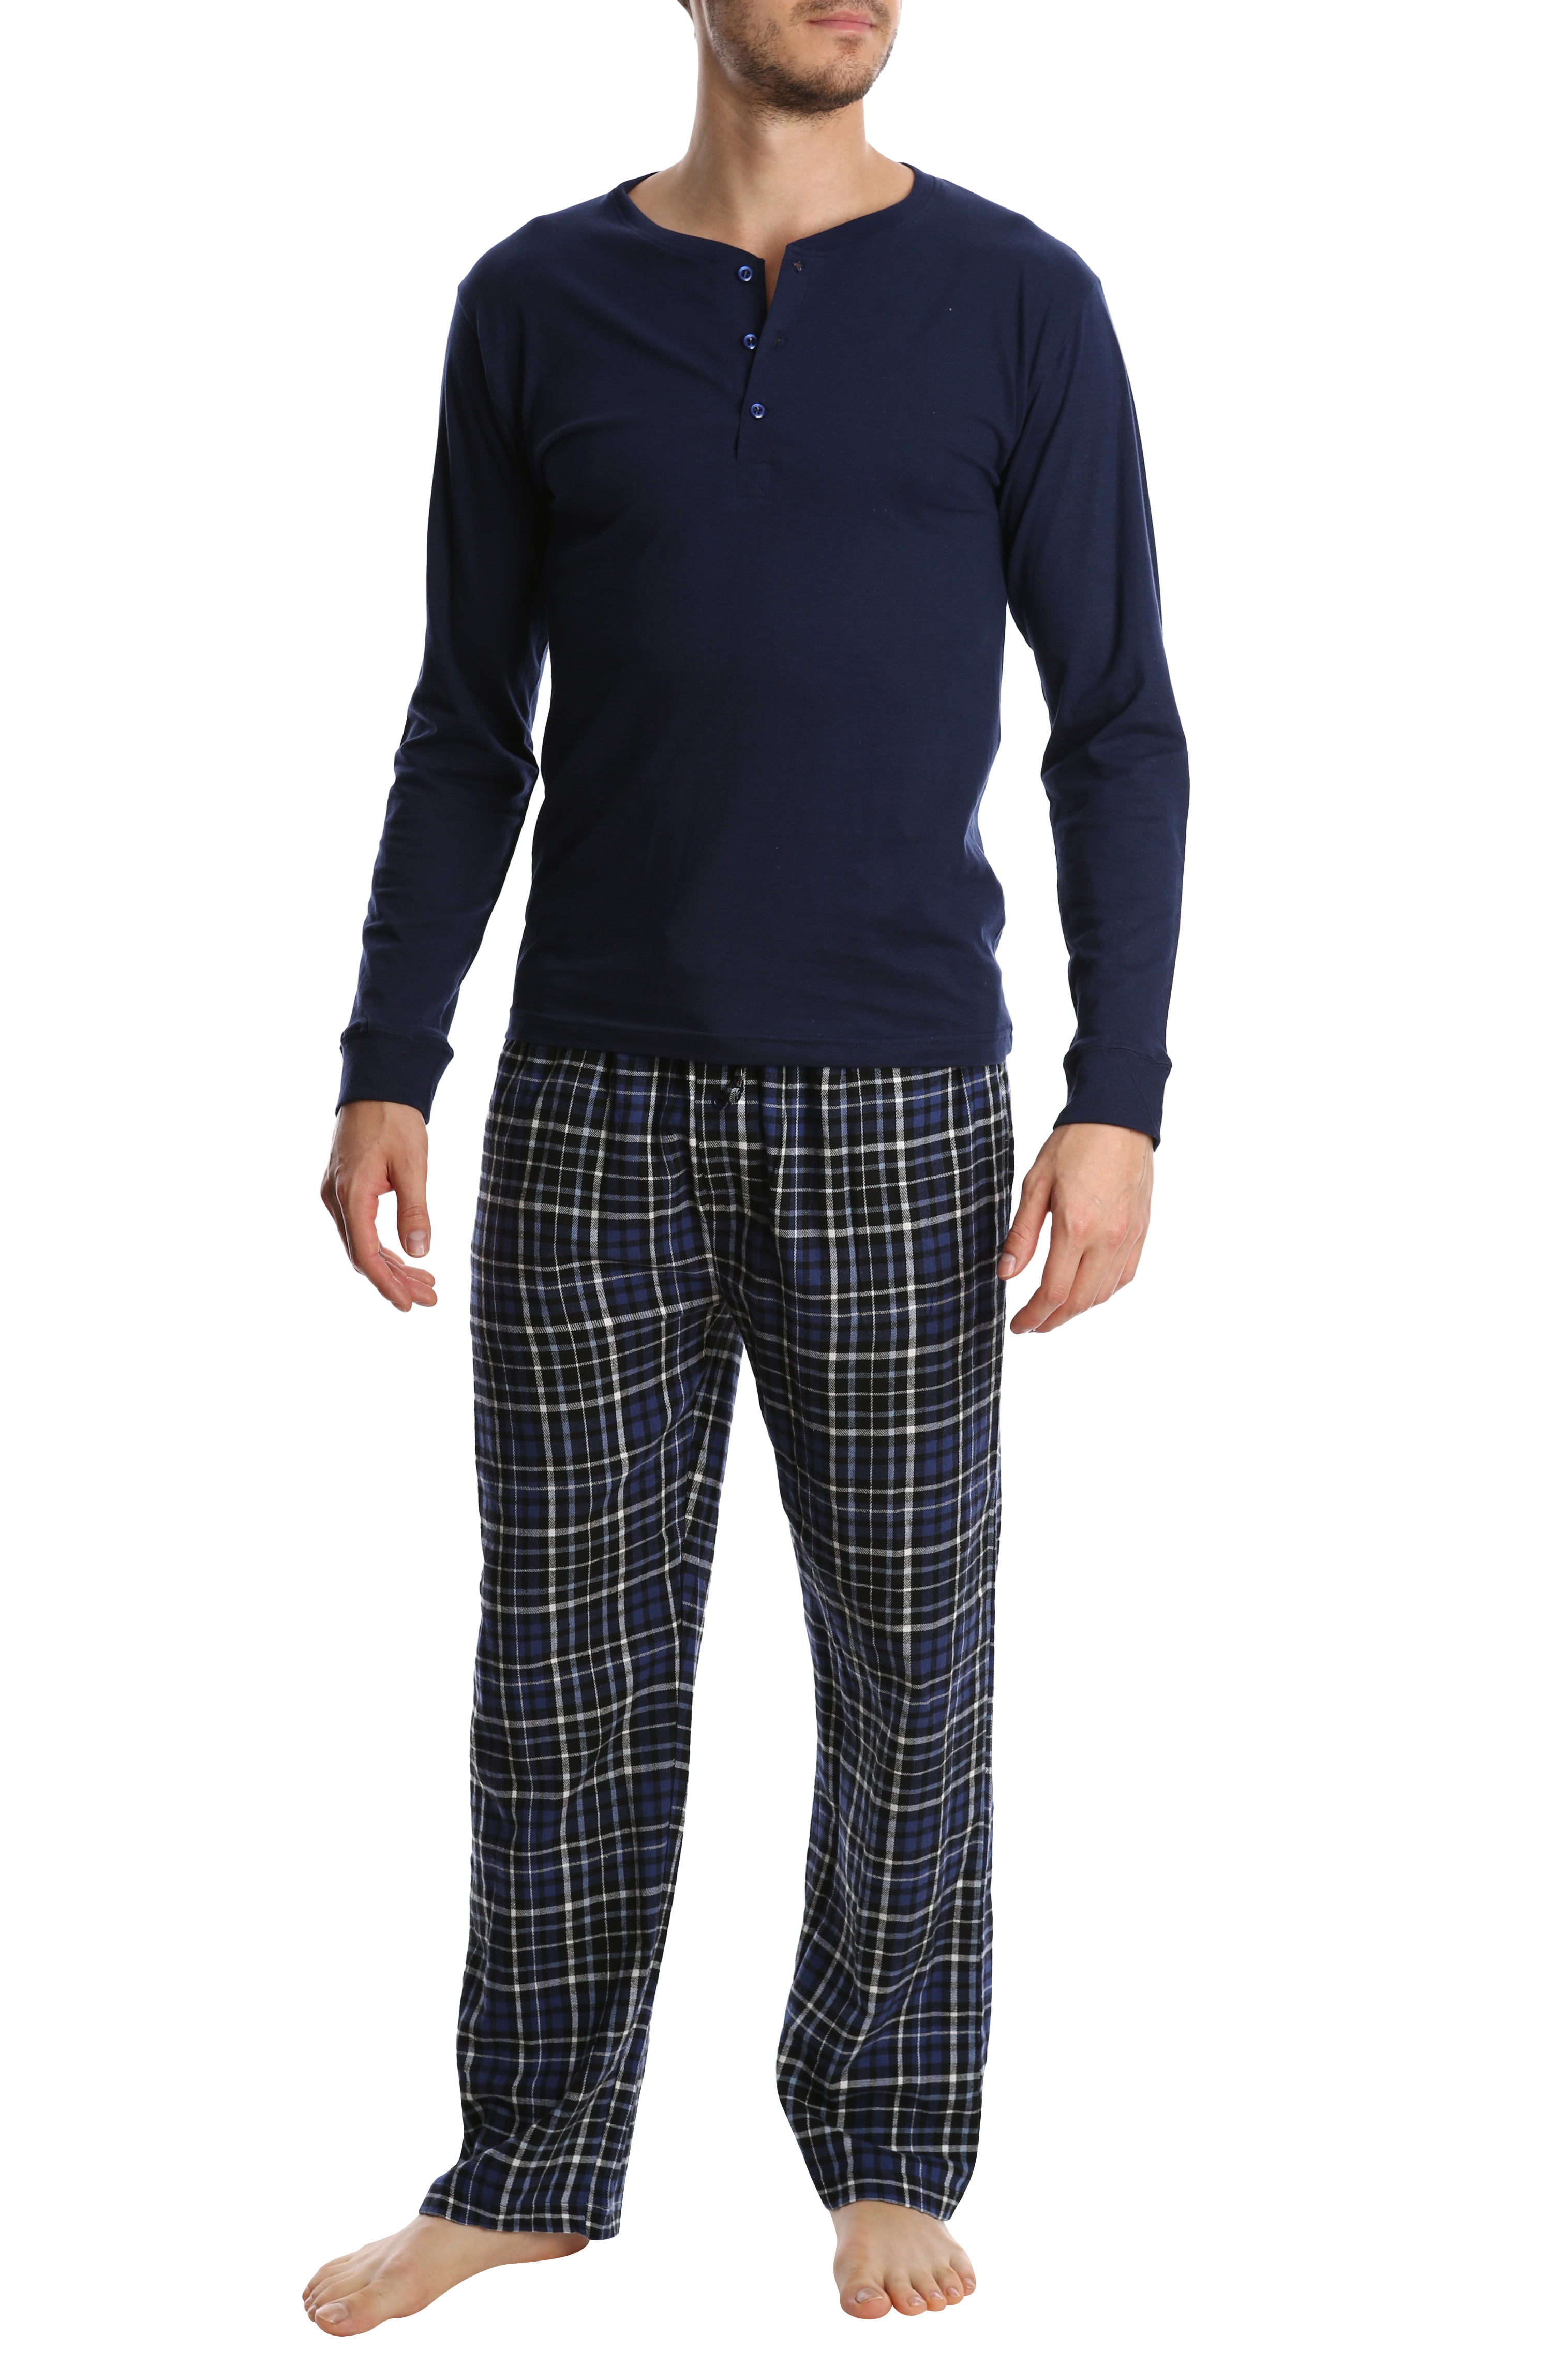 Mens Winter Pyjamas Sets Ultra Soft Henley Long Sleeve Top & Flannel Checked Bottoms Fleece Pyjamas for Men Loungewear PJs Sleepwear